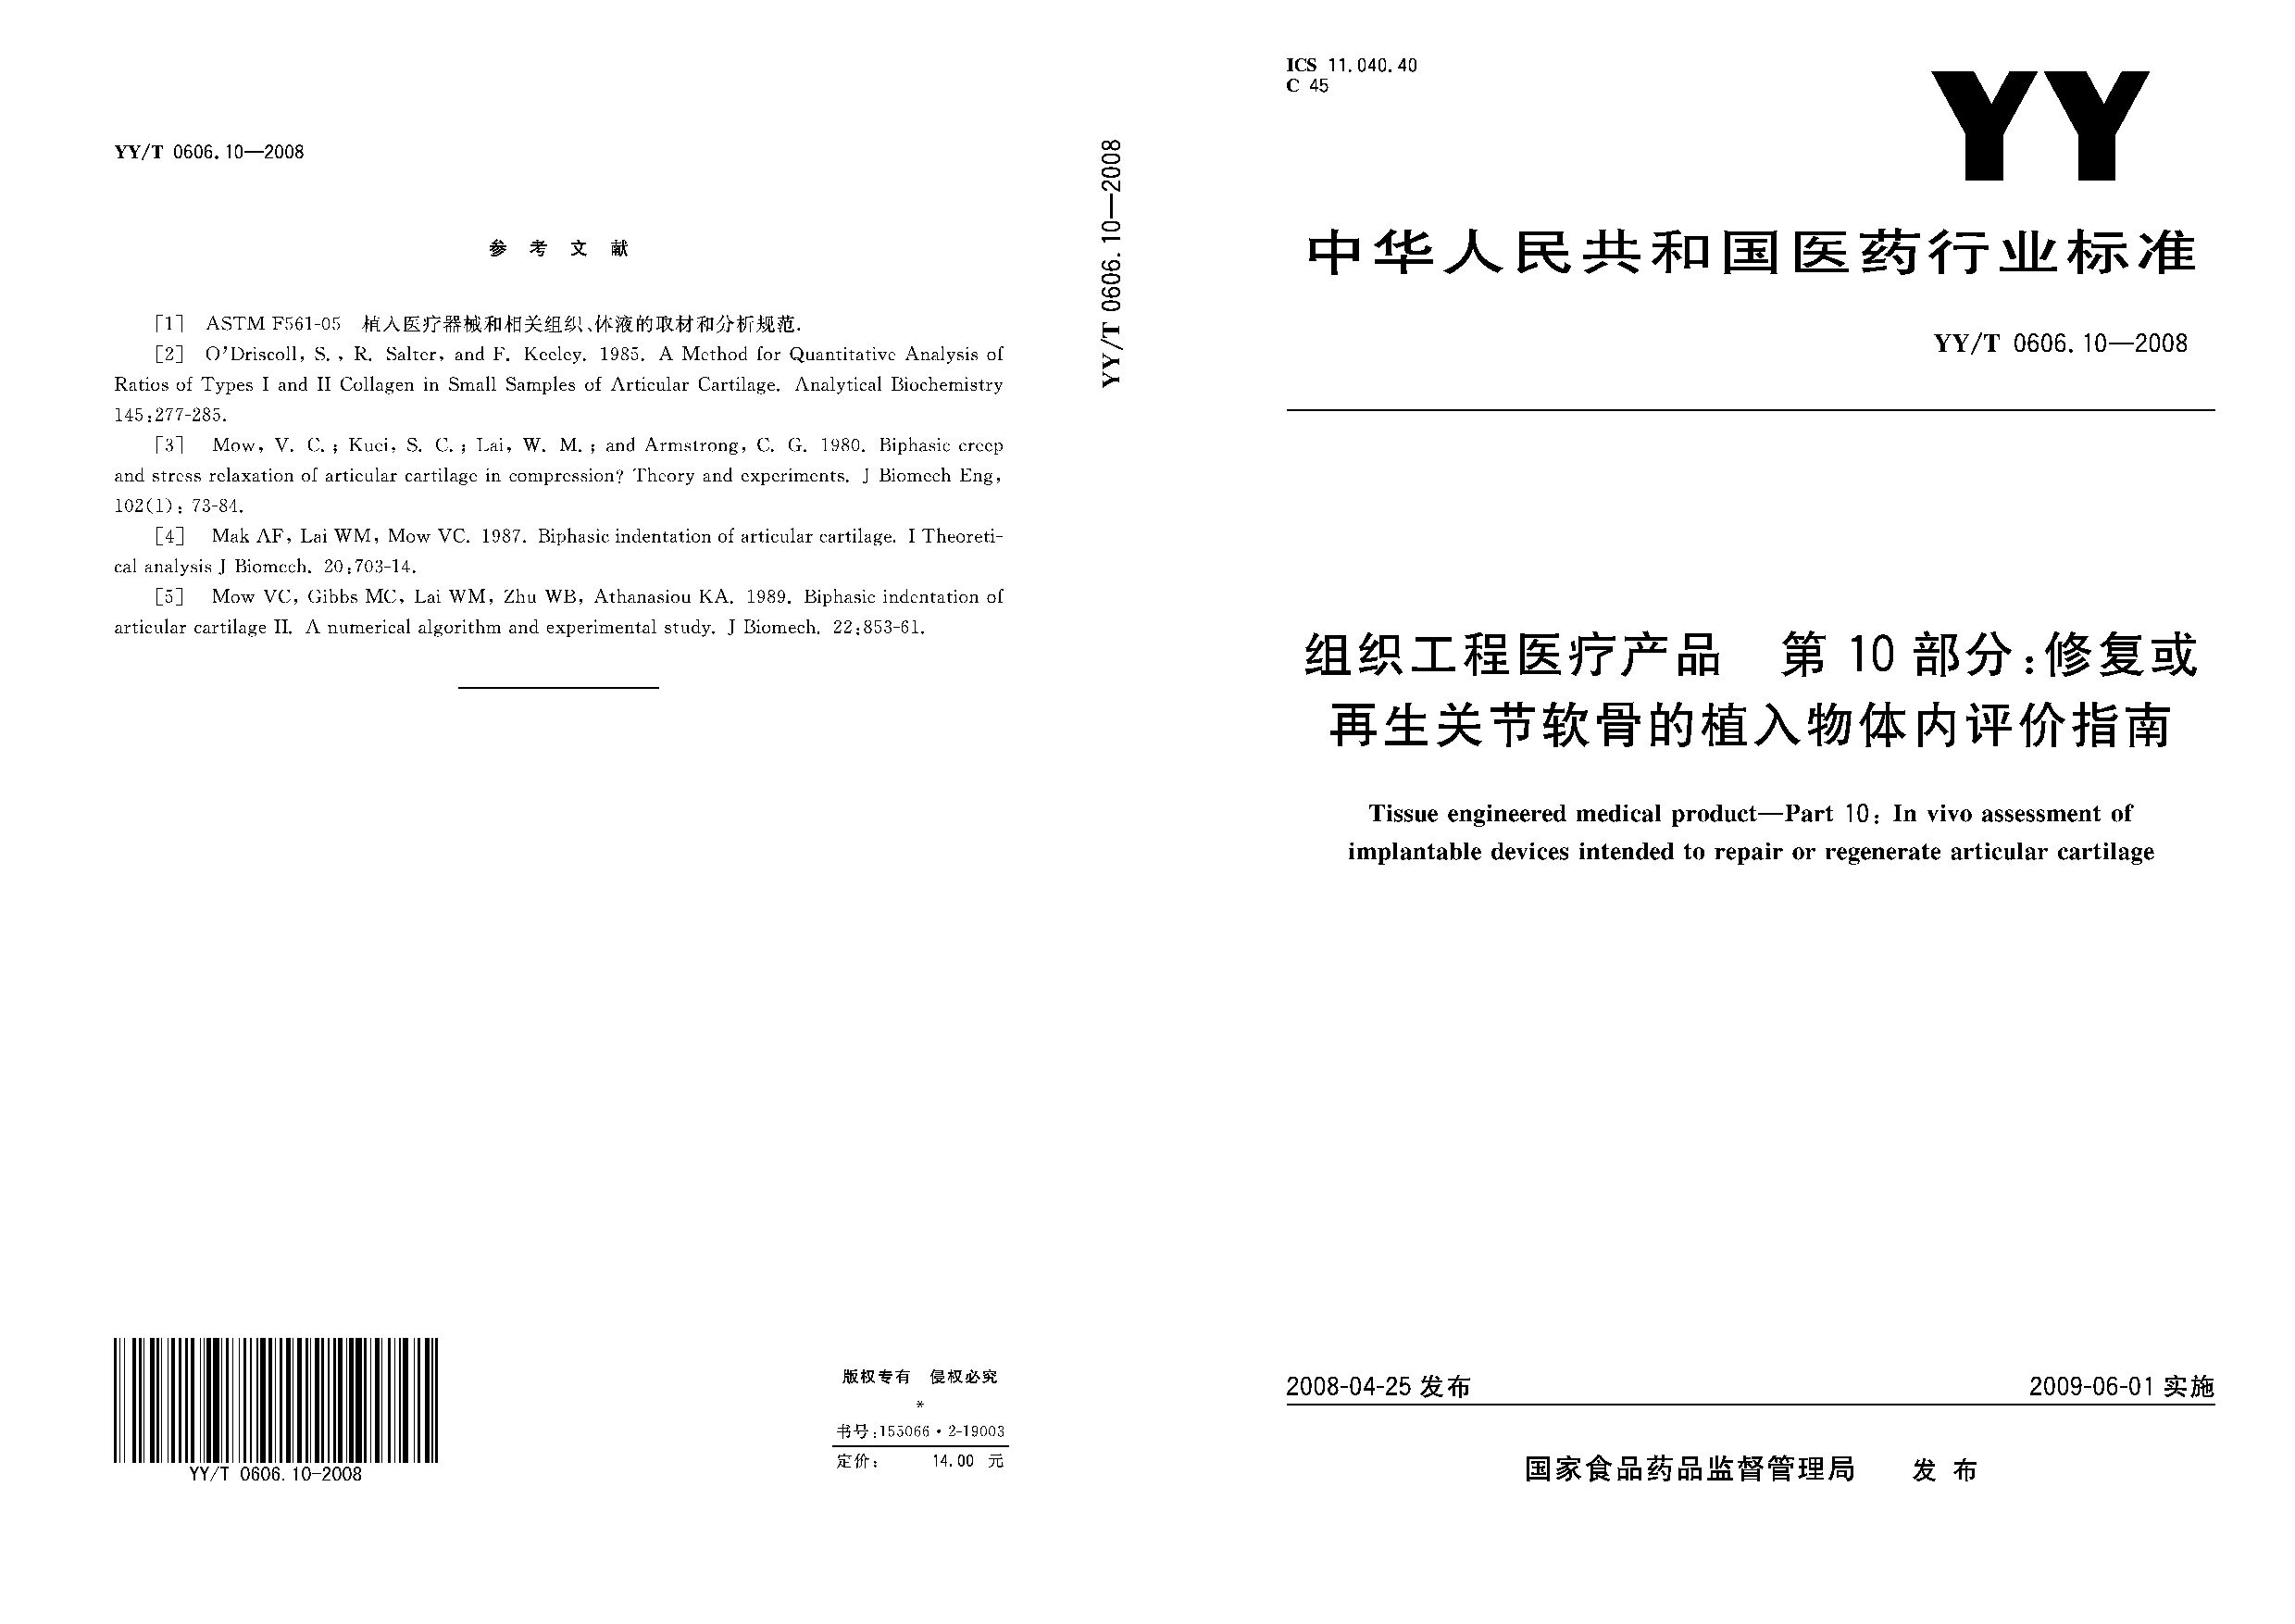 YY/T 0606.10-2008封面图